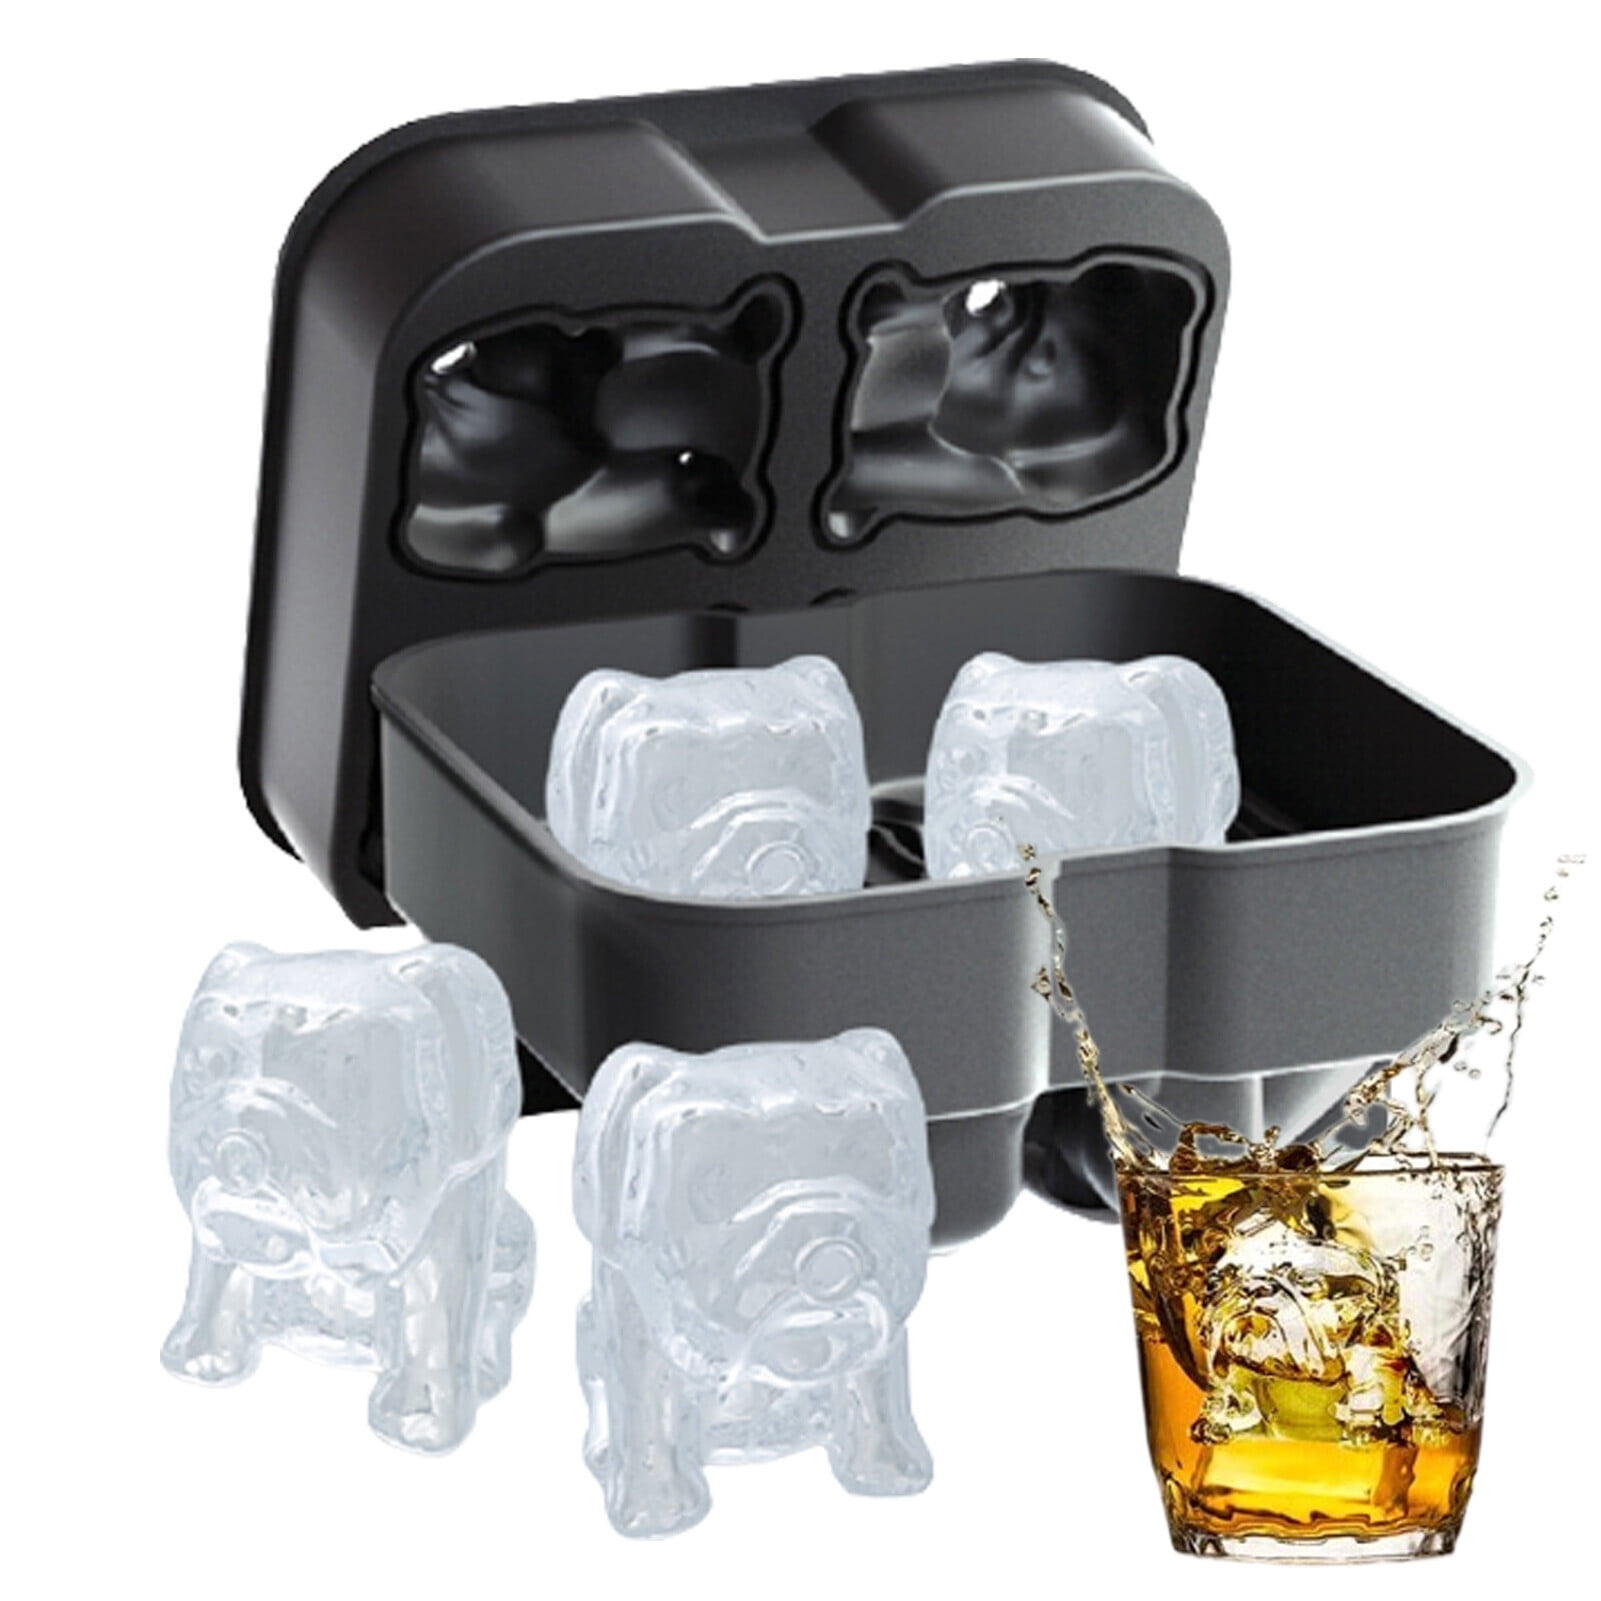 Bulldog Ice Cube Mold 4 Cavity Novelty Drink Tray Fun Shape Ice